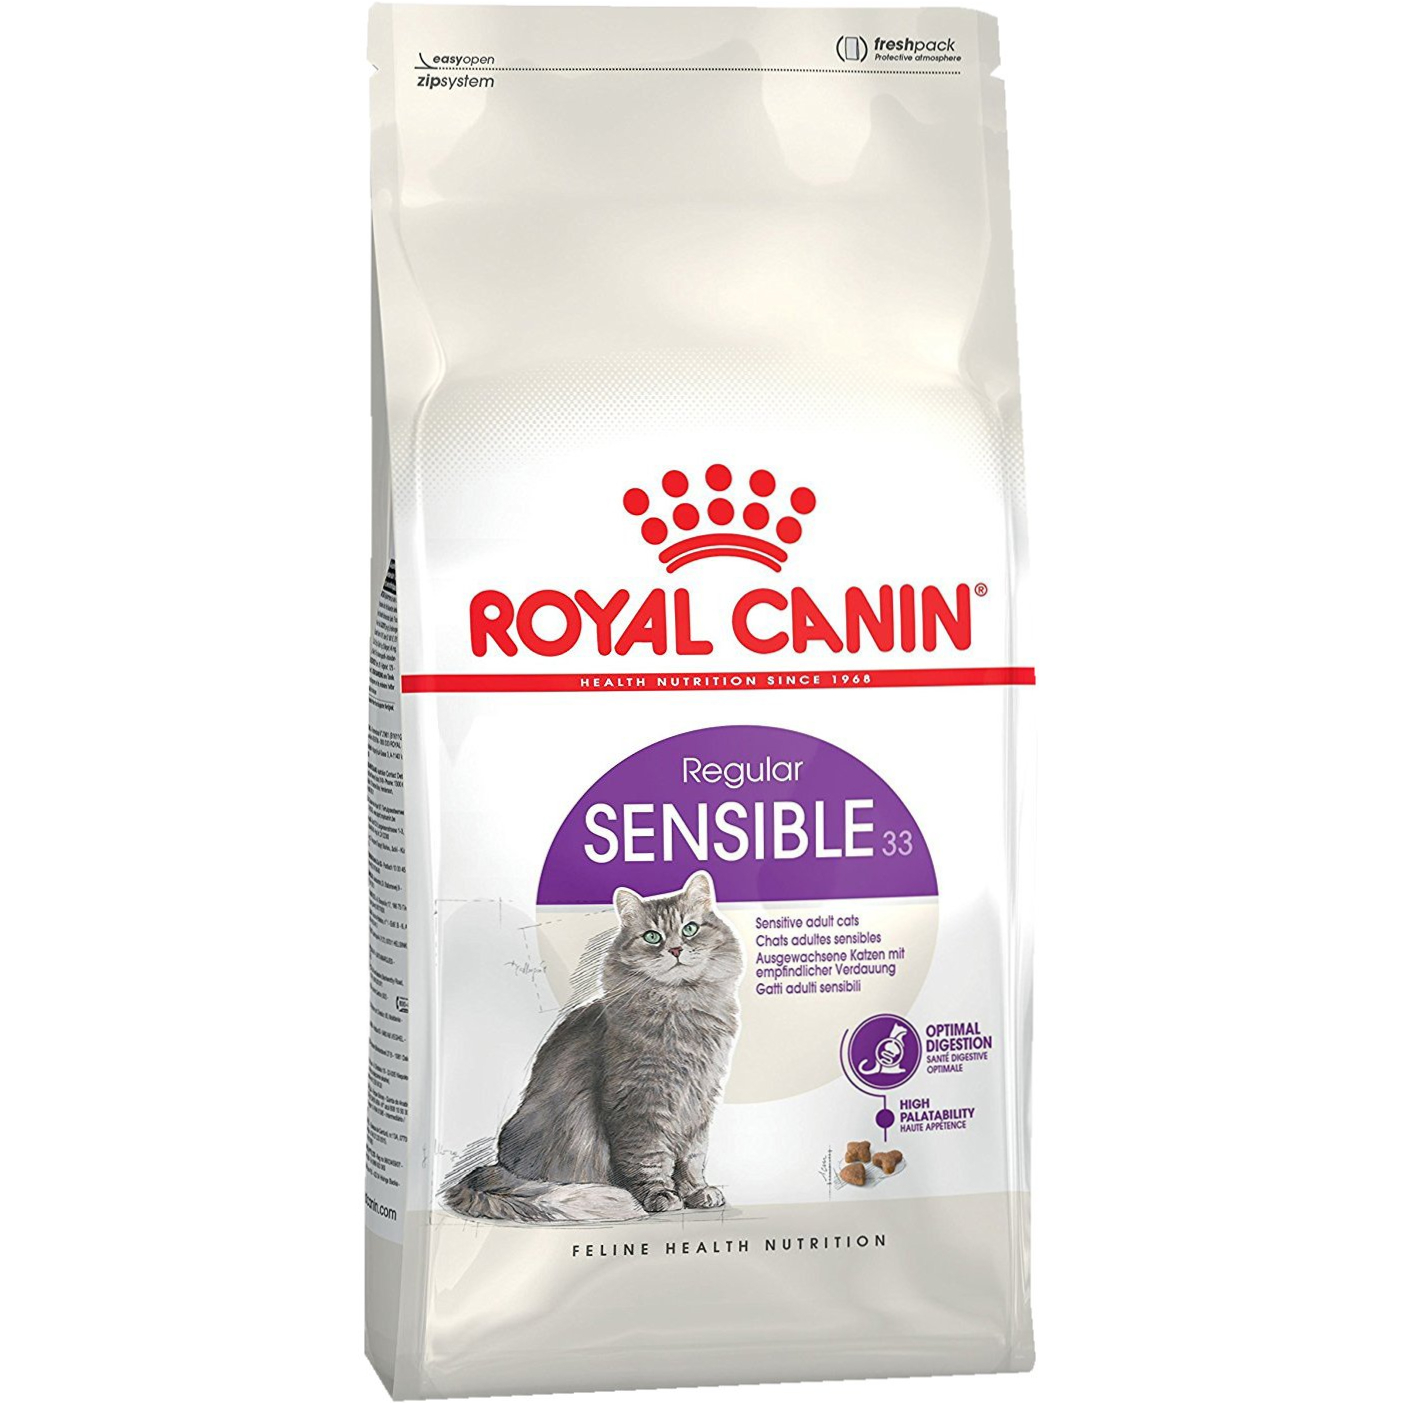 Корм для кошек Royal Canin Sensible 33 с чувствительным пищеварением 1,2 кг корм для кошек pro plan elegant для кошек с чувствительной кожей с лососем 400 г